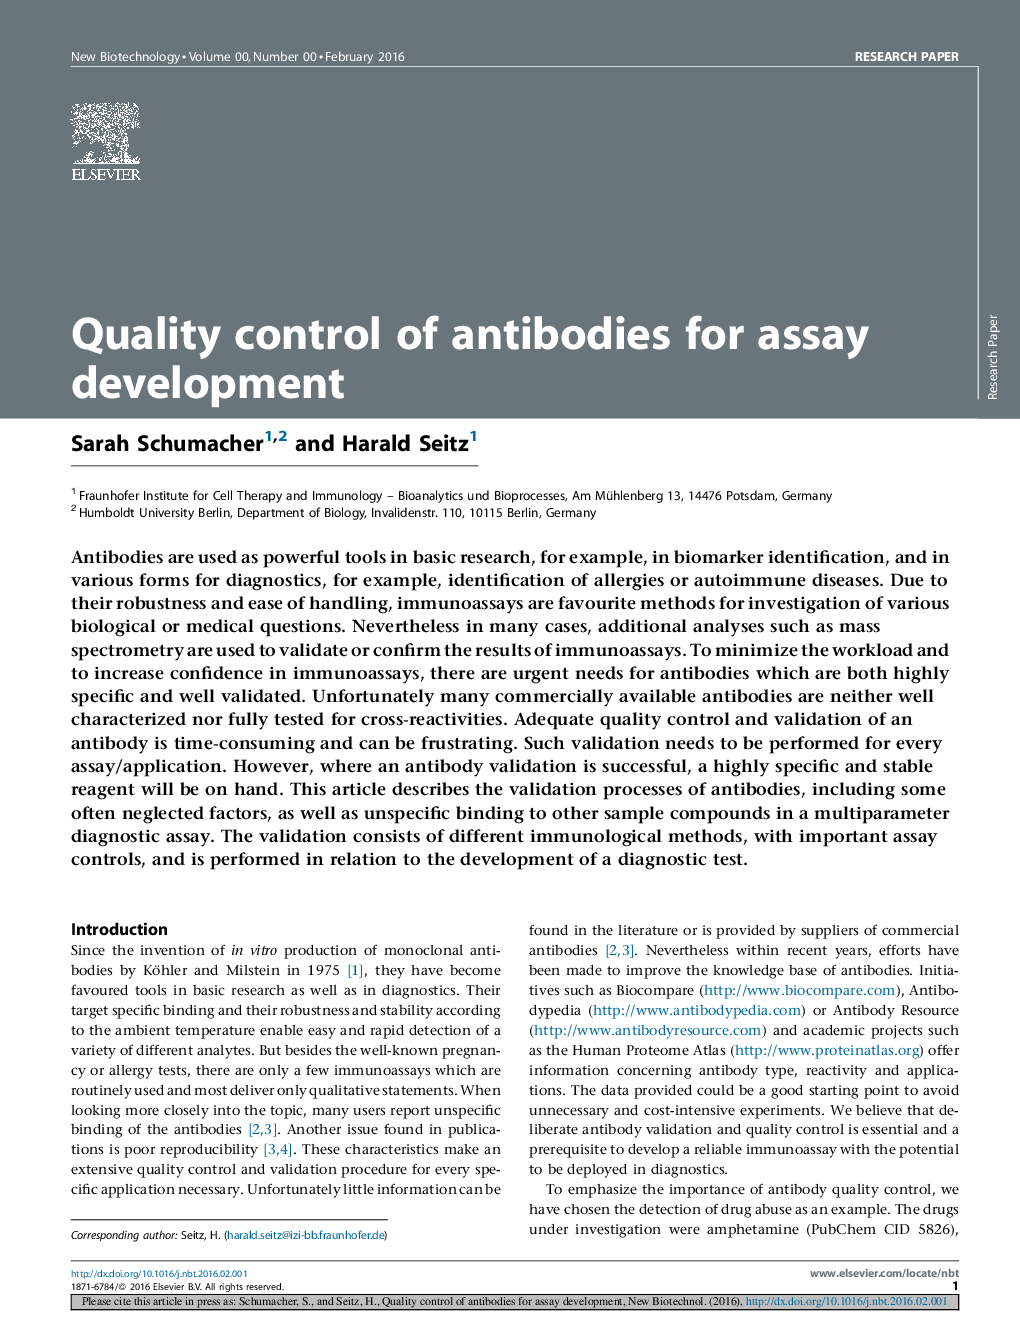 کنترل کیفیت آنتیبادی ها برای توسعه تست 